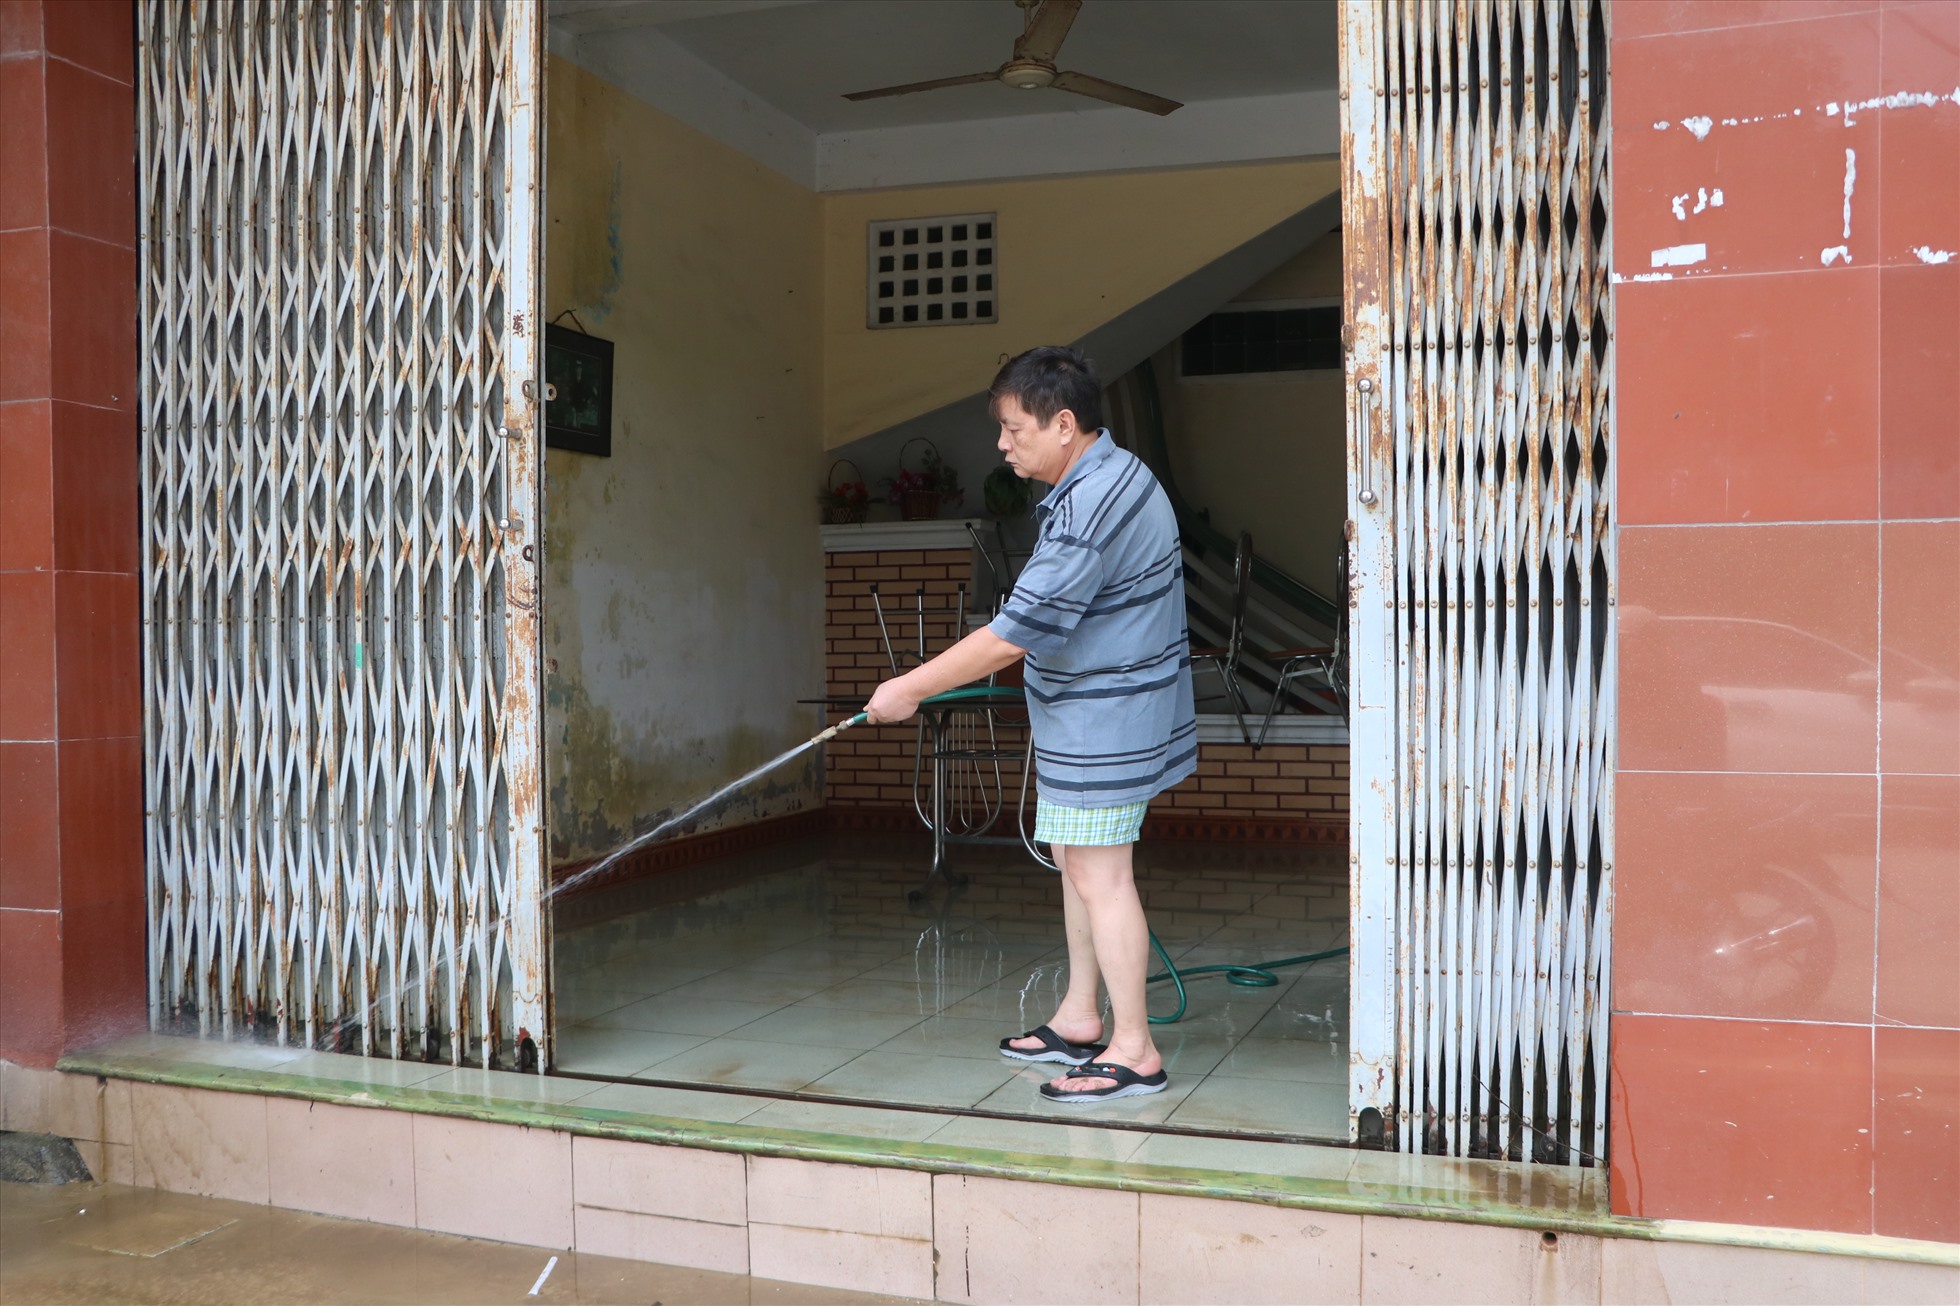 Sau 3 ngày nhà cửa bị chìm trong nước lũ, nước rút, người dân ở Thừa Thiên Huế bắt tay thu dọn bùn đất, ổn định cuộc sống.